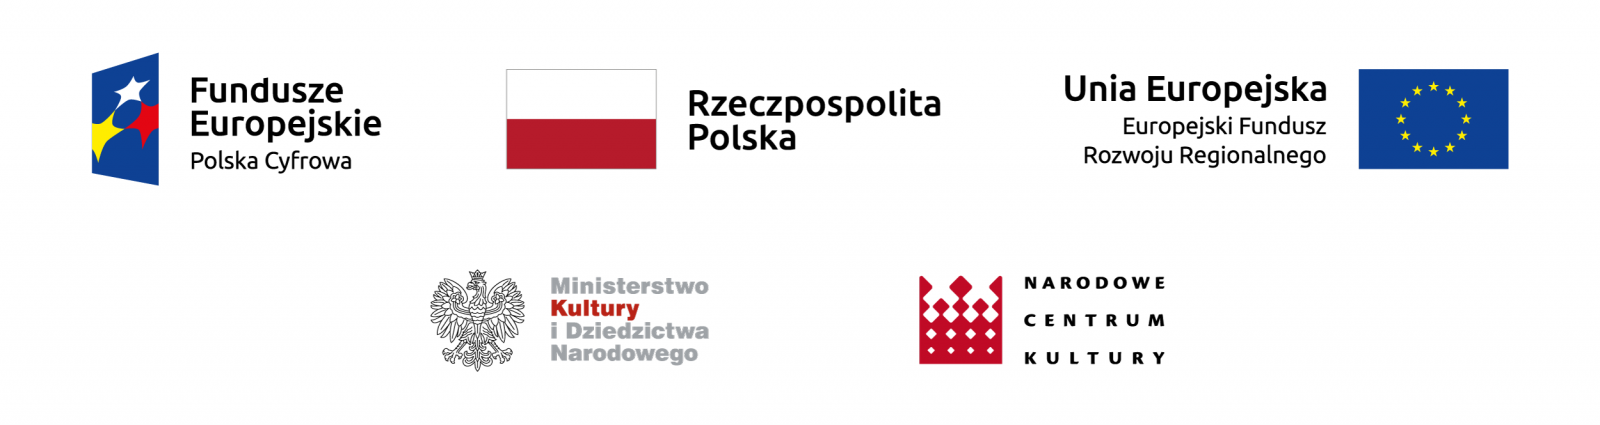 Logotypy projektów unijnych na białym tle